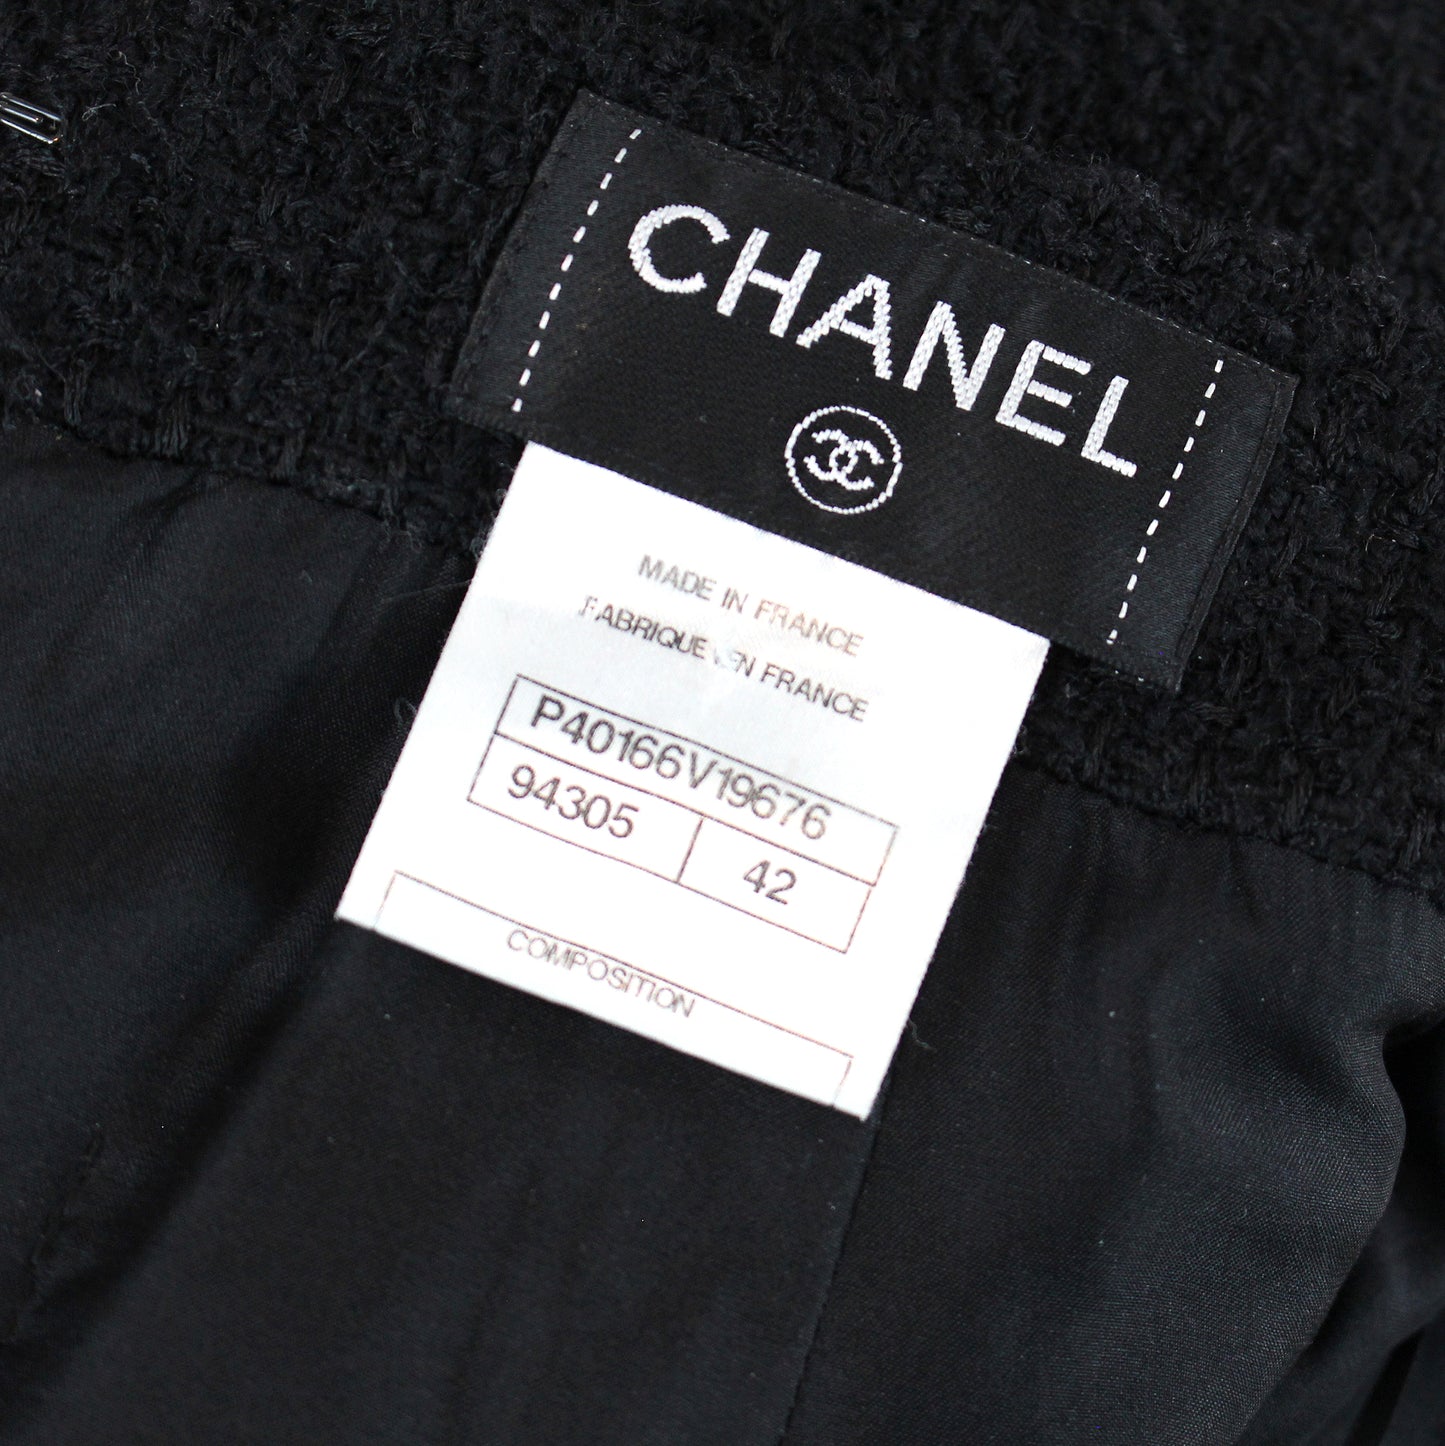 Chanel "Little Black Jacket" Skirt